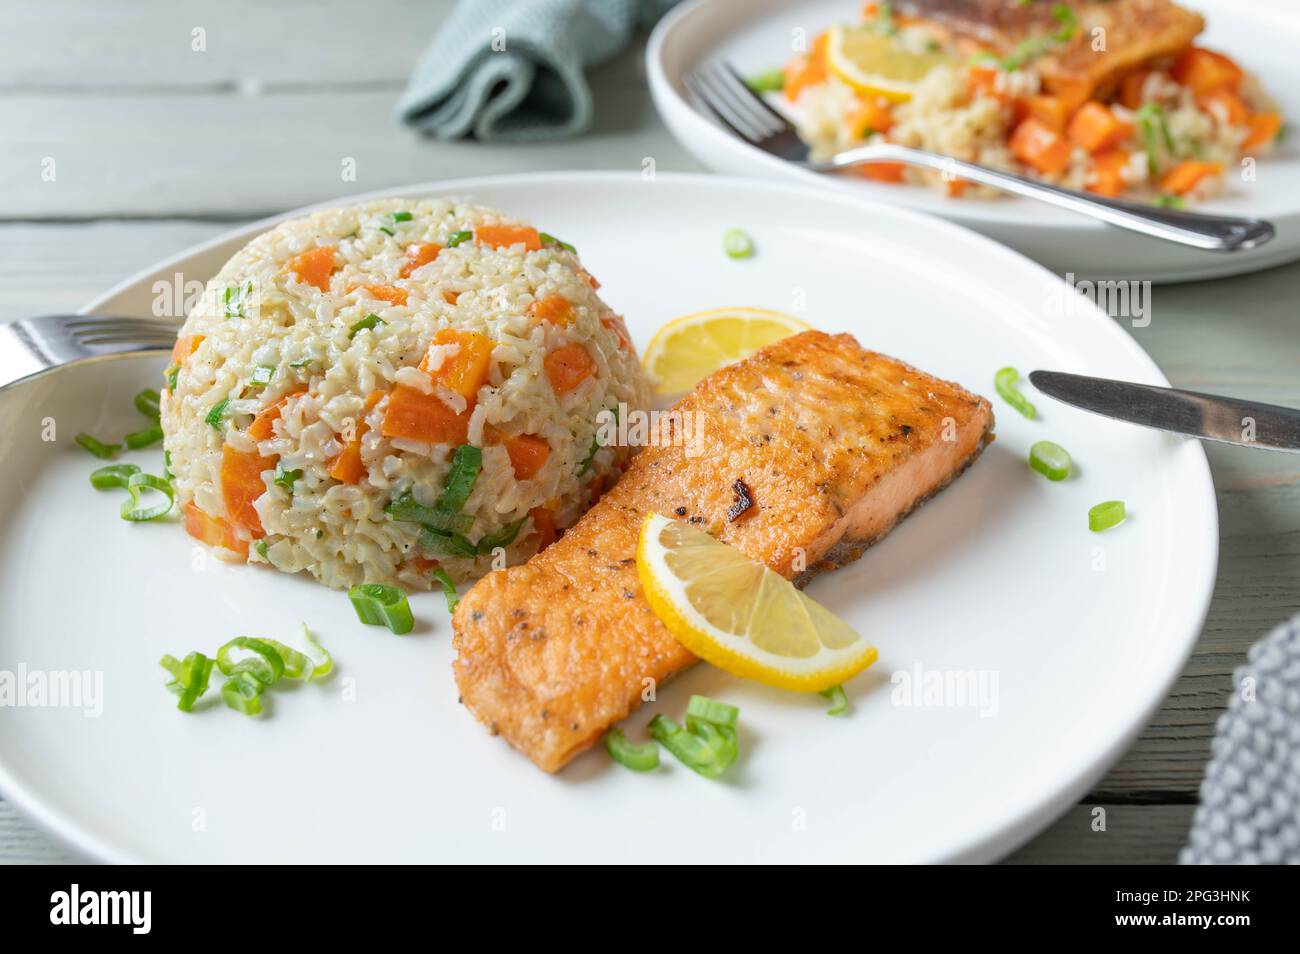 Salmone fritto con riso integrale, piselli, carote e porro su un piatto Foto Stock